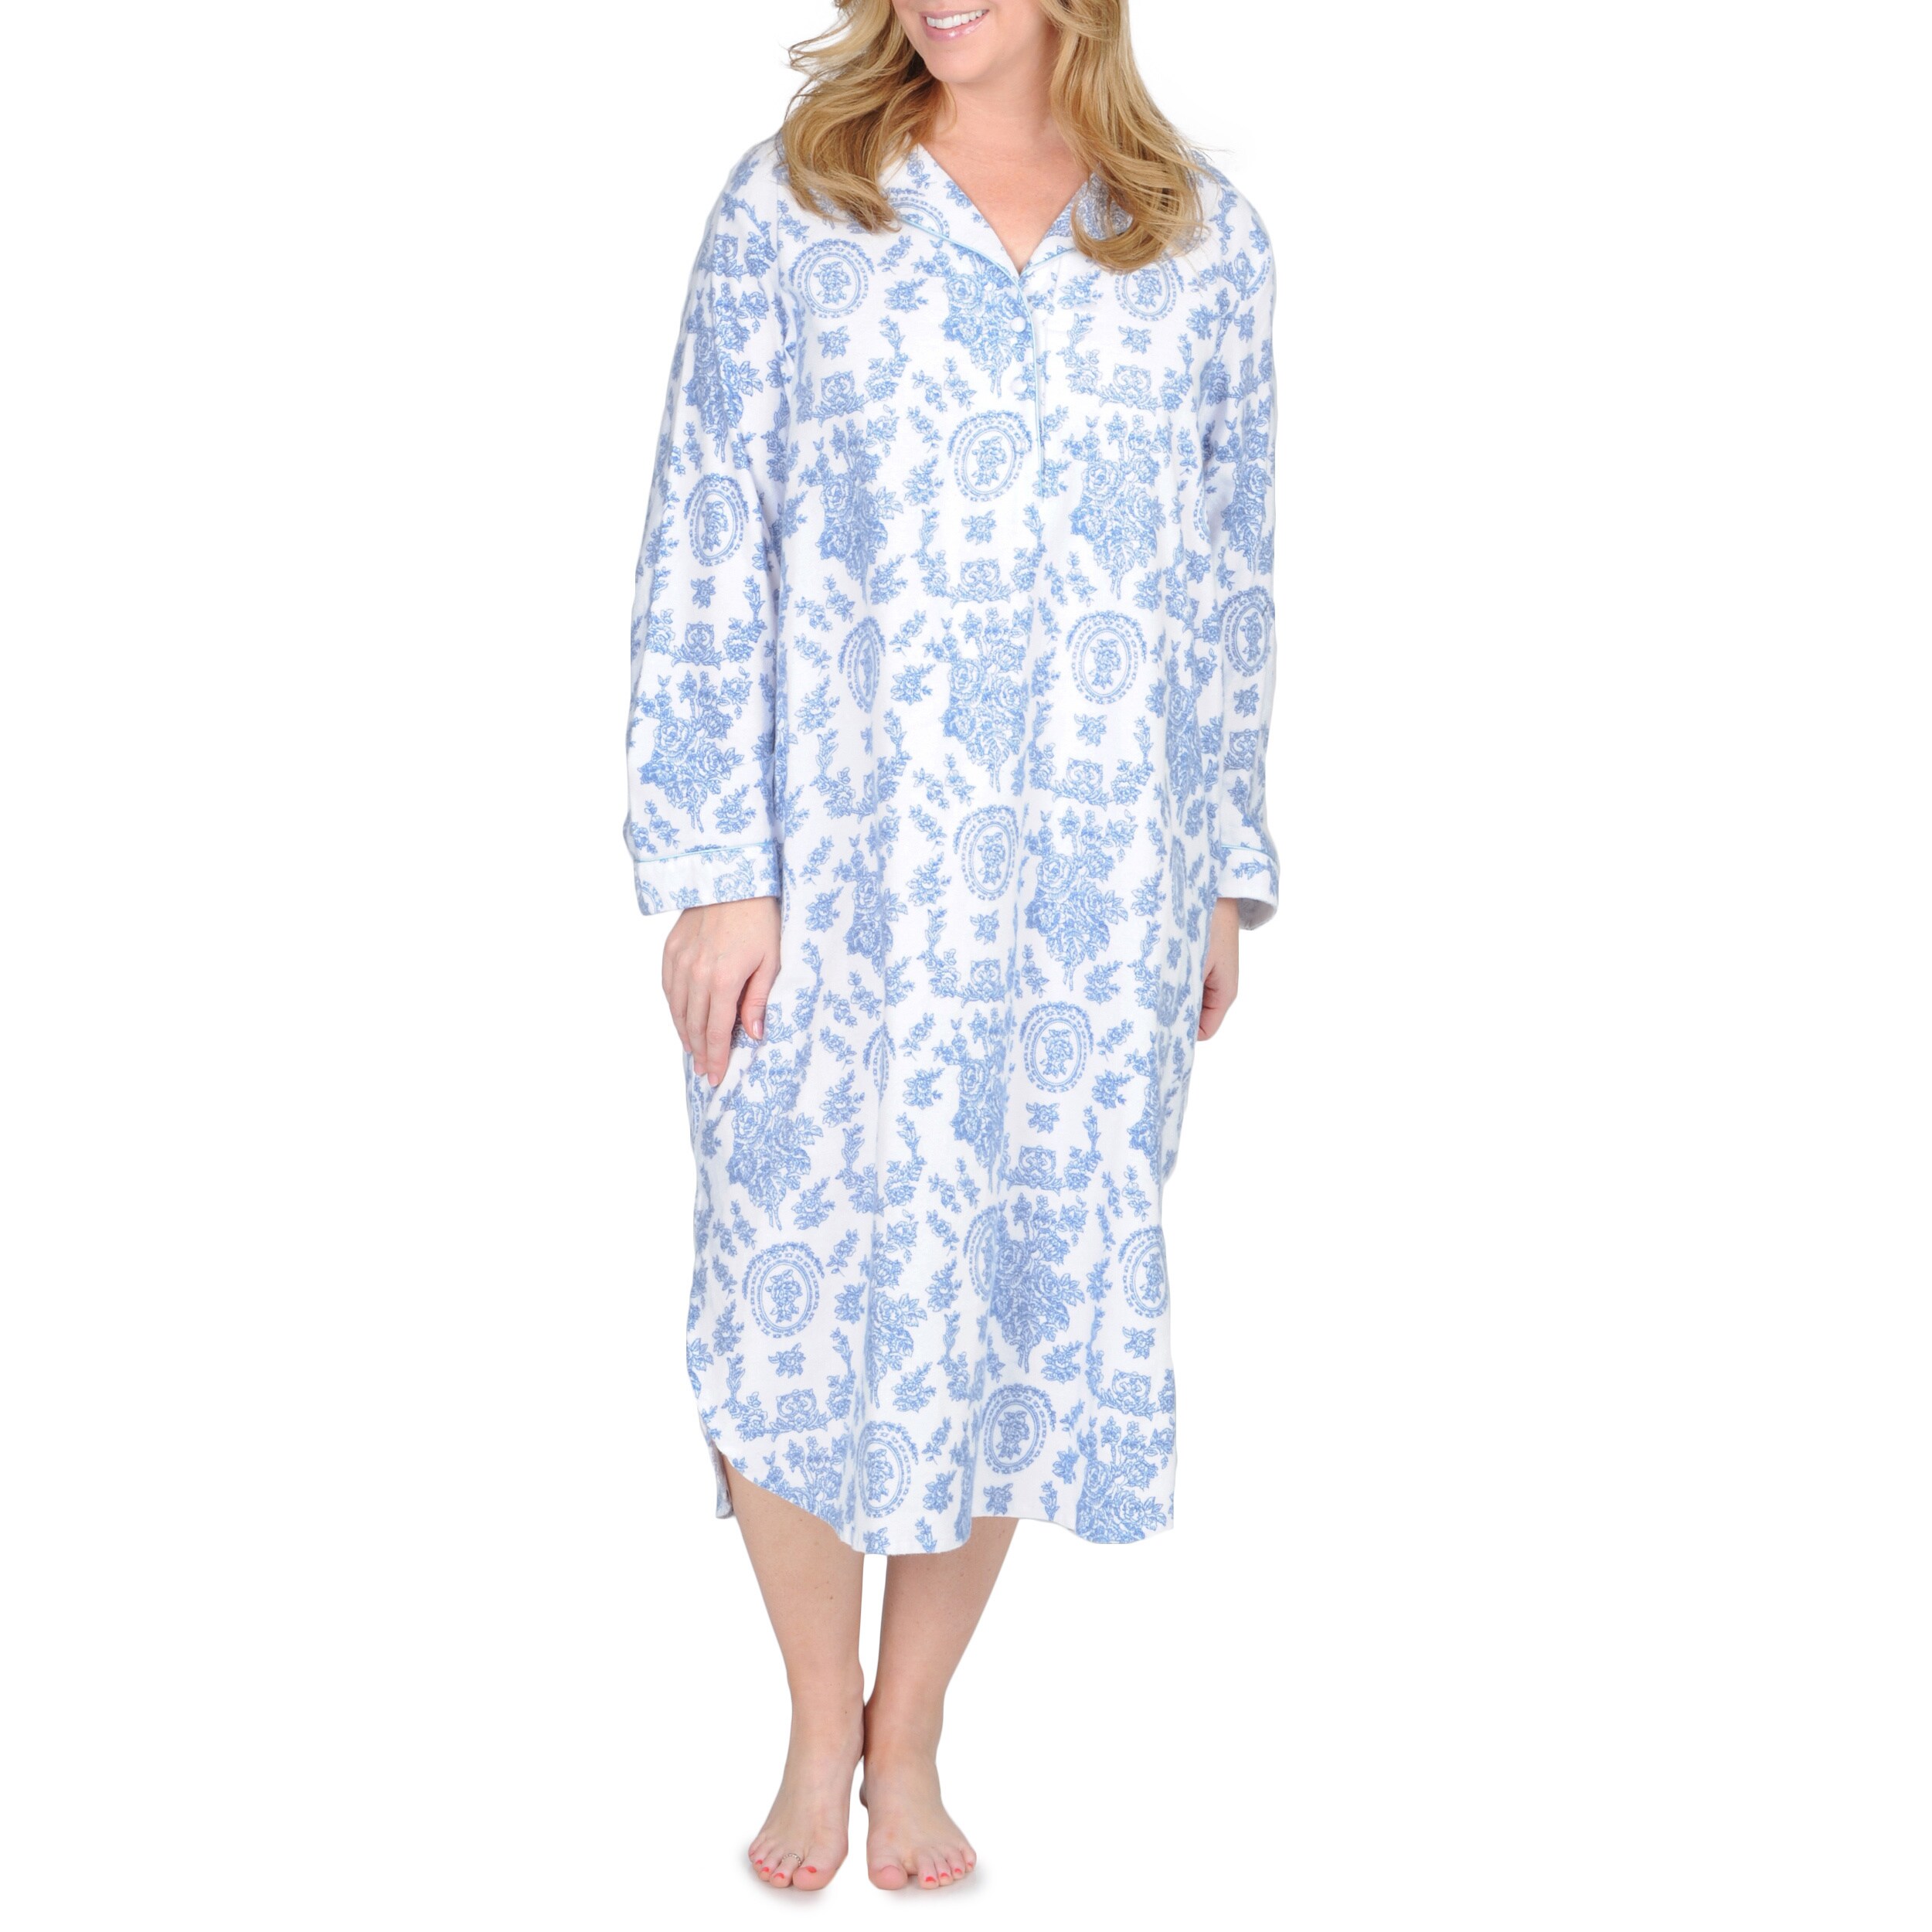 women's plus flannel nightgown